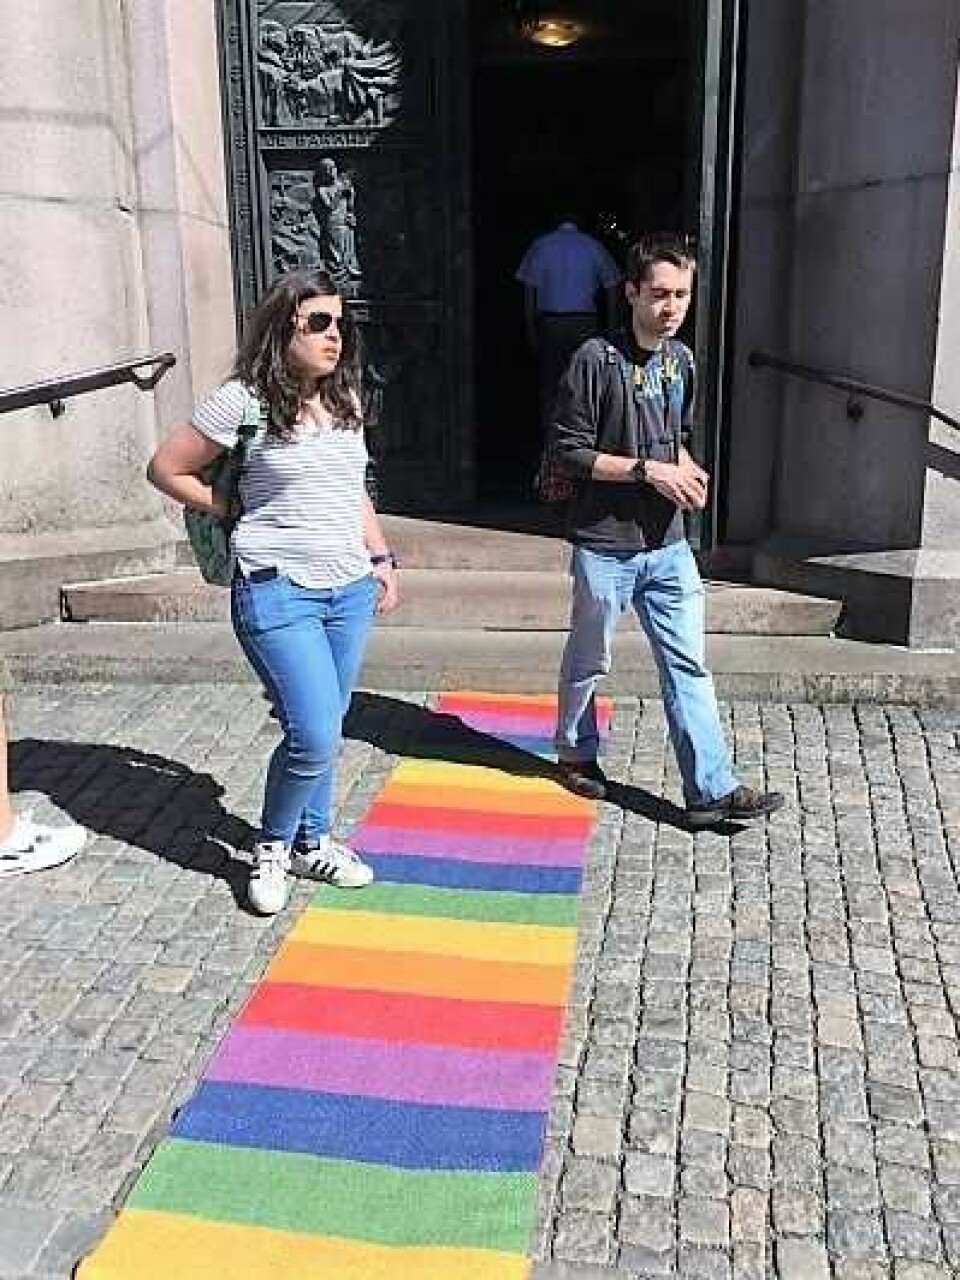 Den røde løperen var skiftet ut med en regnbuesløper under gudstjenesten i Domkirken da Oslo Pride ble arrangert. Foto: Kjersti Opstad